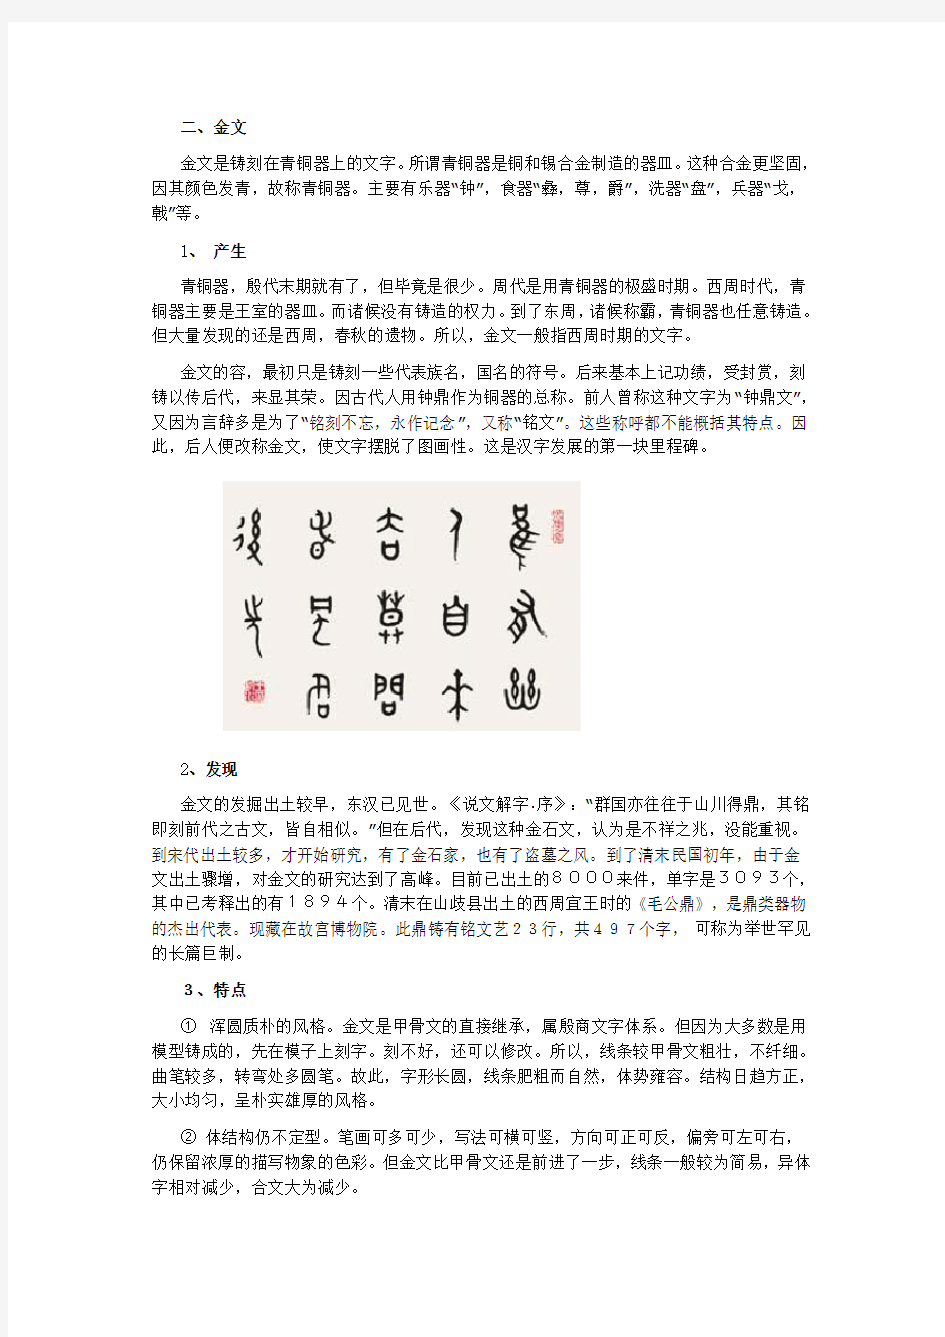 中国汉字的演变过程(一)